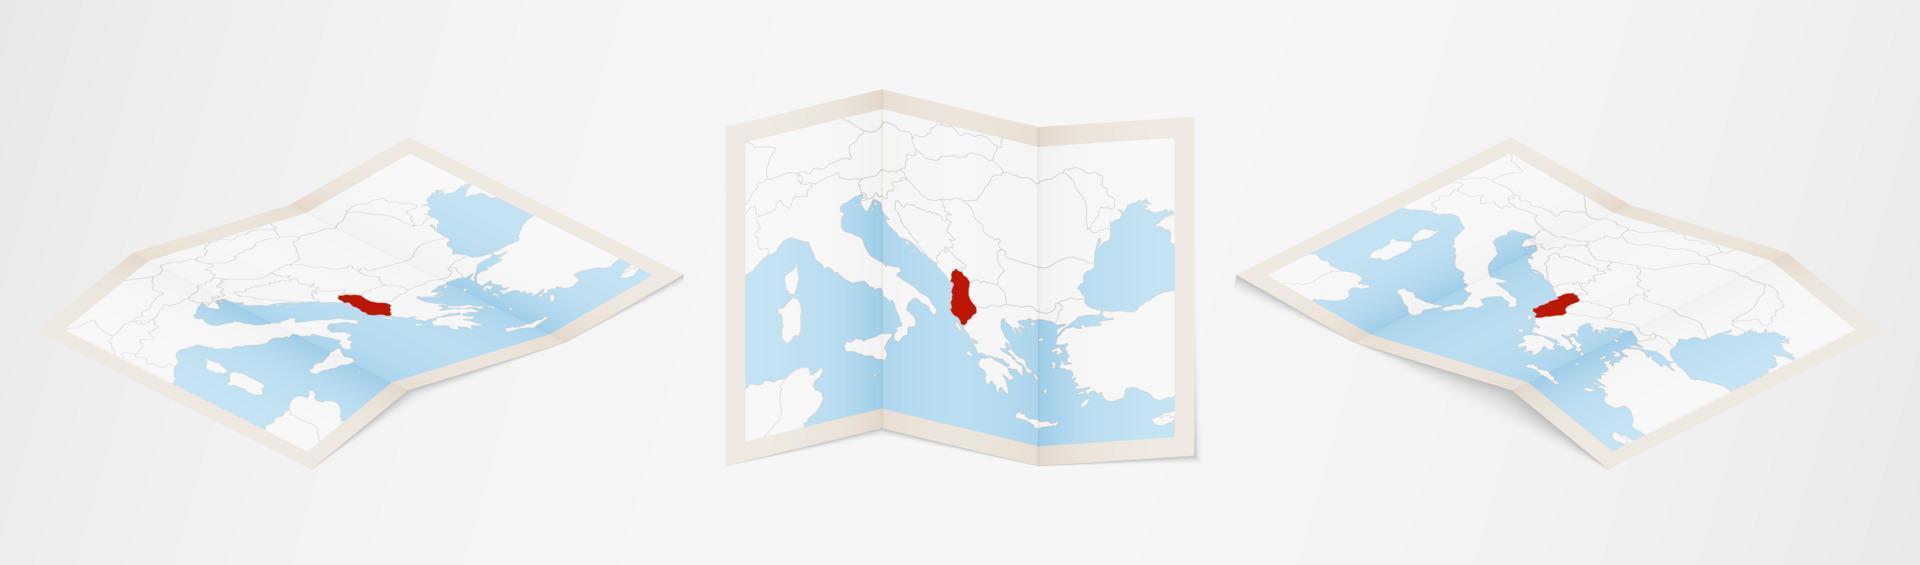 Faltkarte von Albanien in drei verschiedenen Versionen. vektor